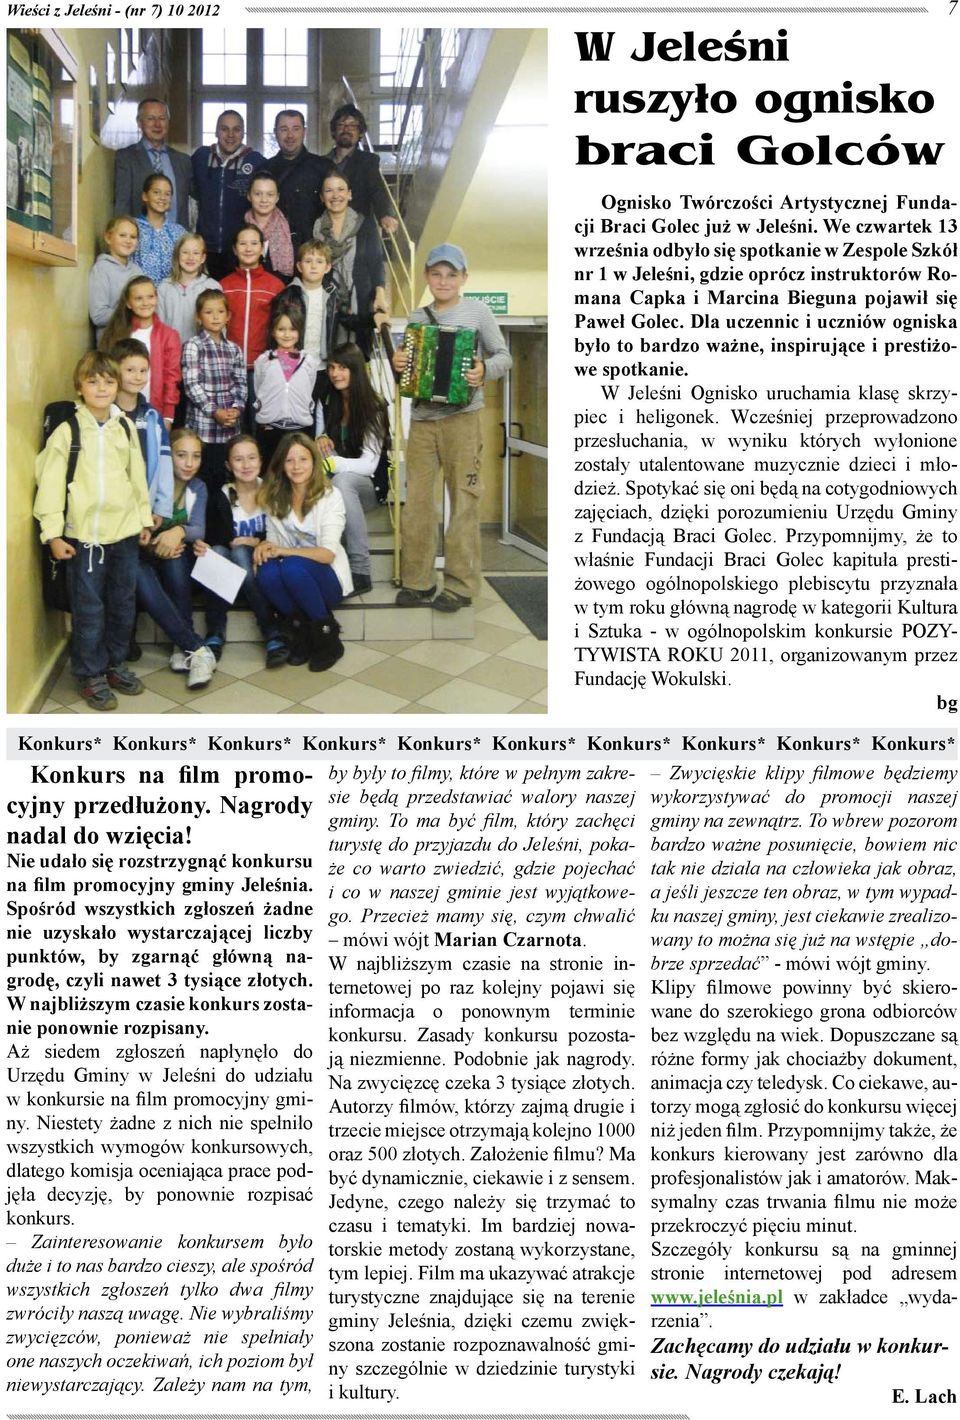 Aż siedem zgłoszeń napłynęło do Urzędu Gminy w Jeleśni do udziału w konkursie na film promocyjny gminy.